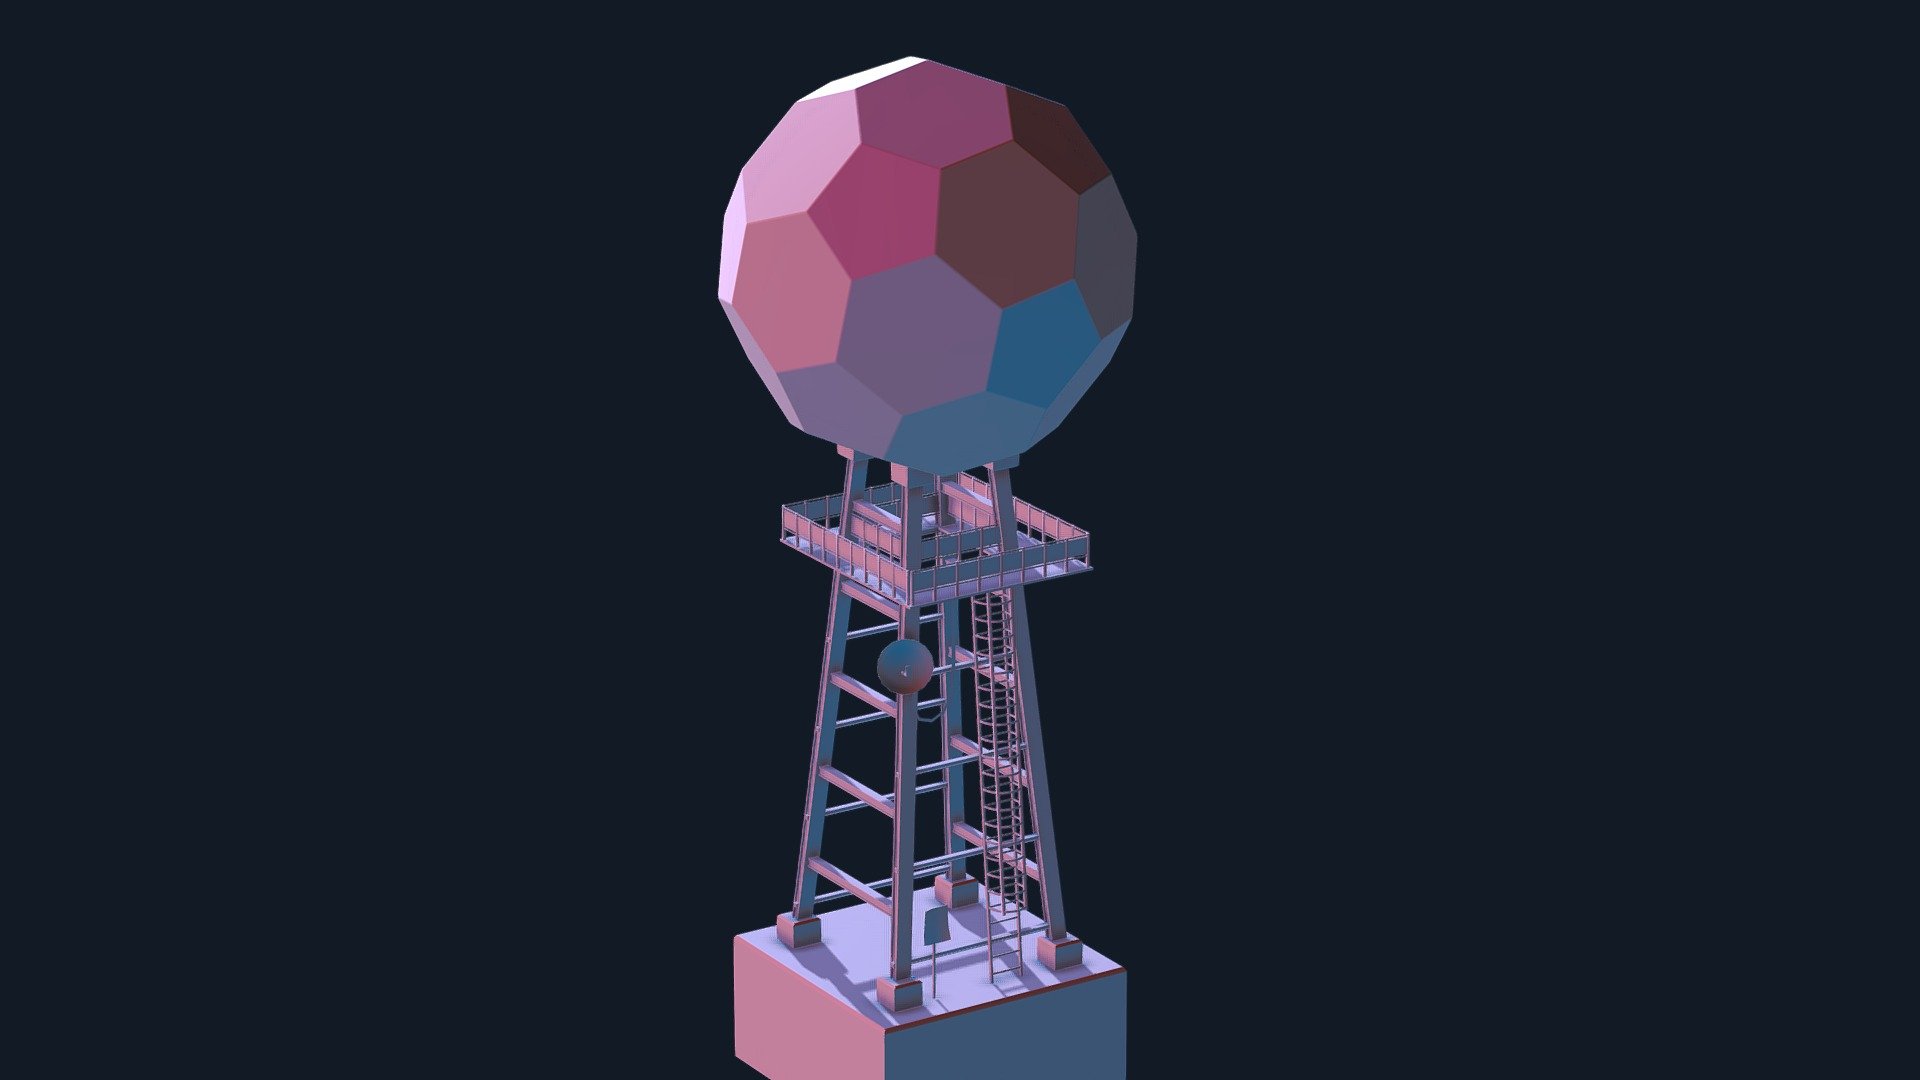 Sci-Fi Tower